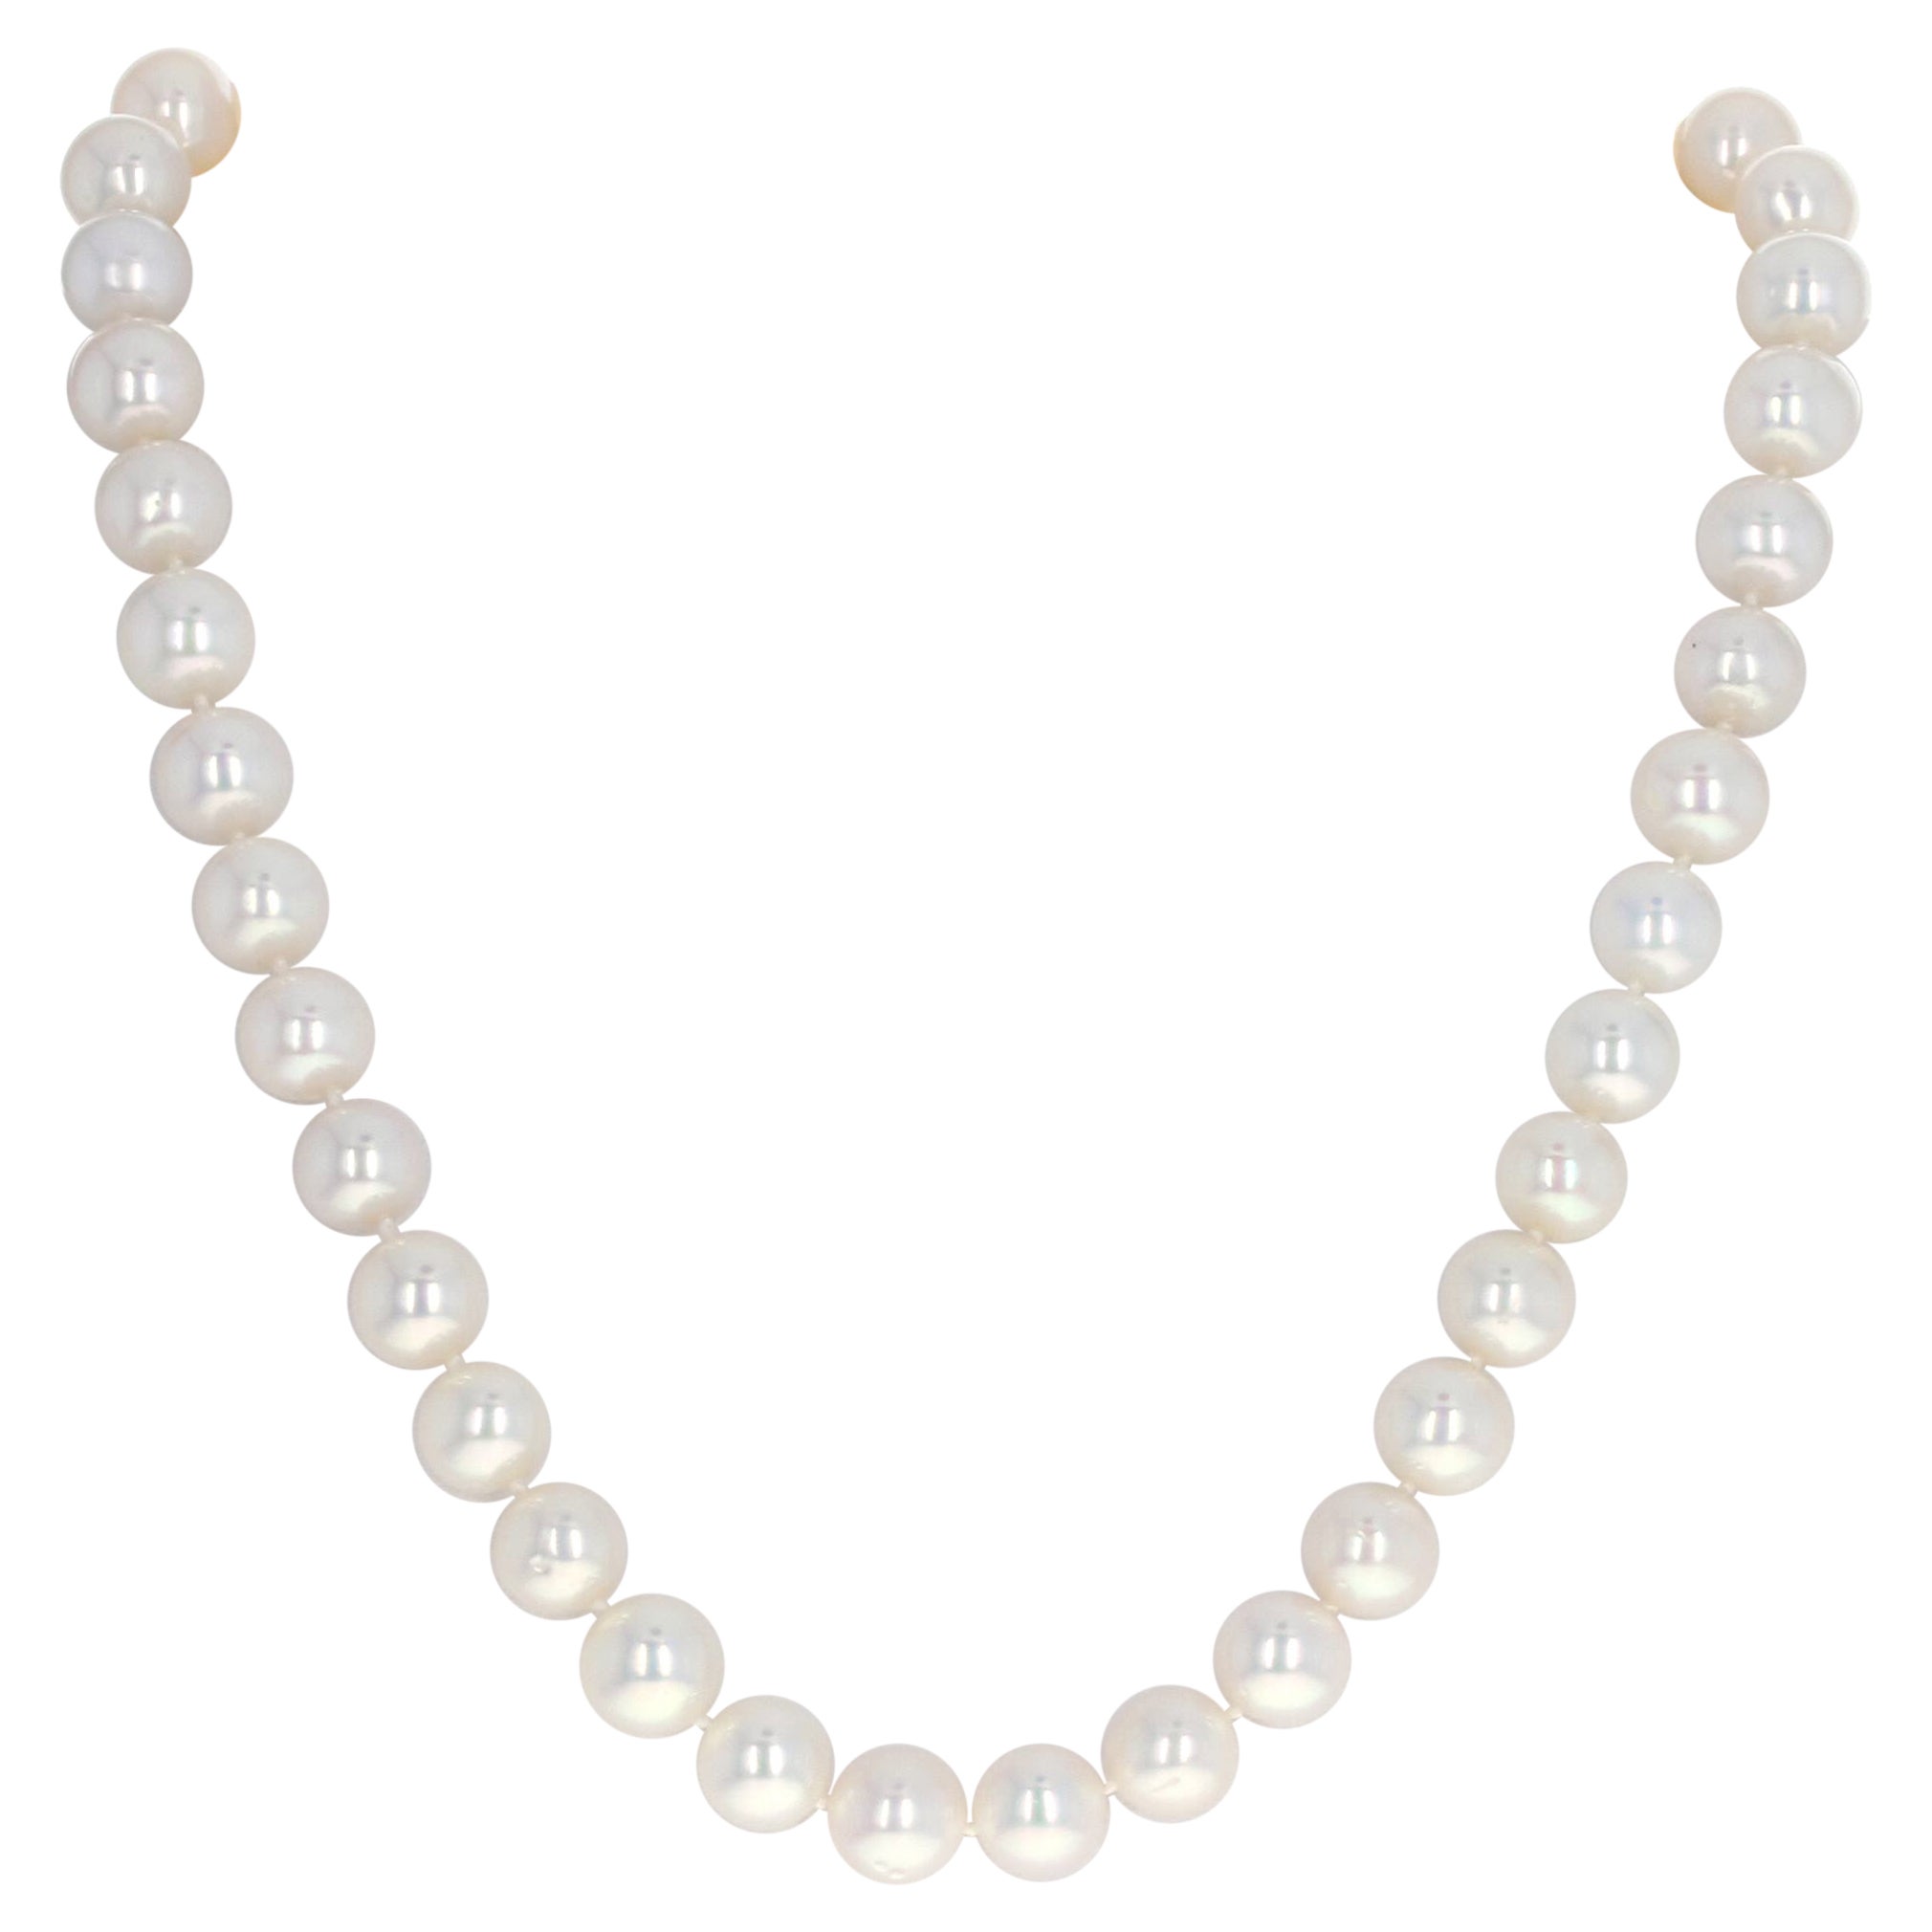 Halskette mit echtem Perlenstrang, Verschluss aus 14k Weißgold mit gebürsteten Perlen